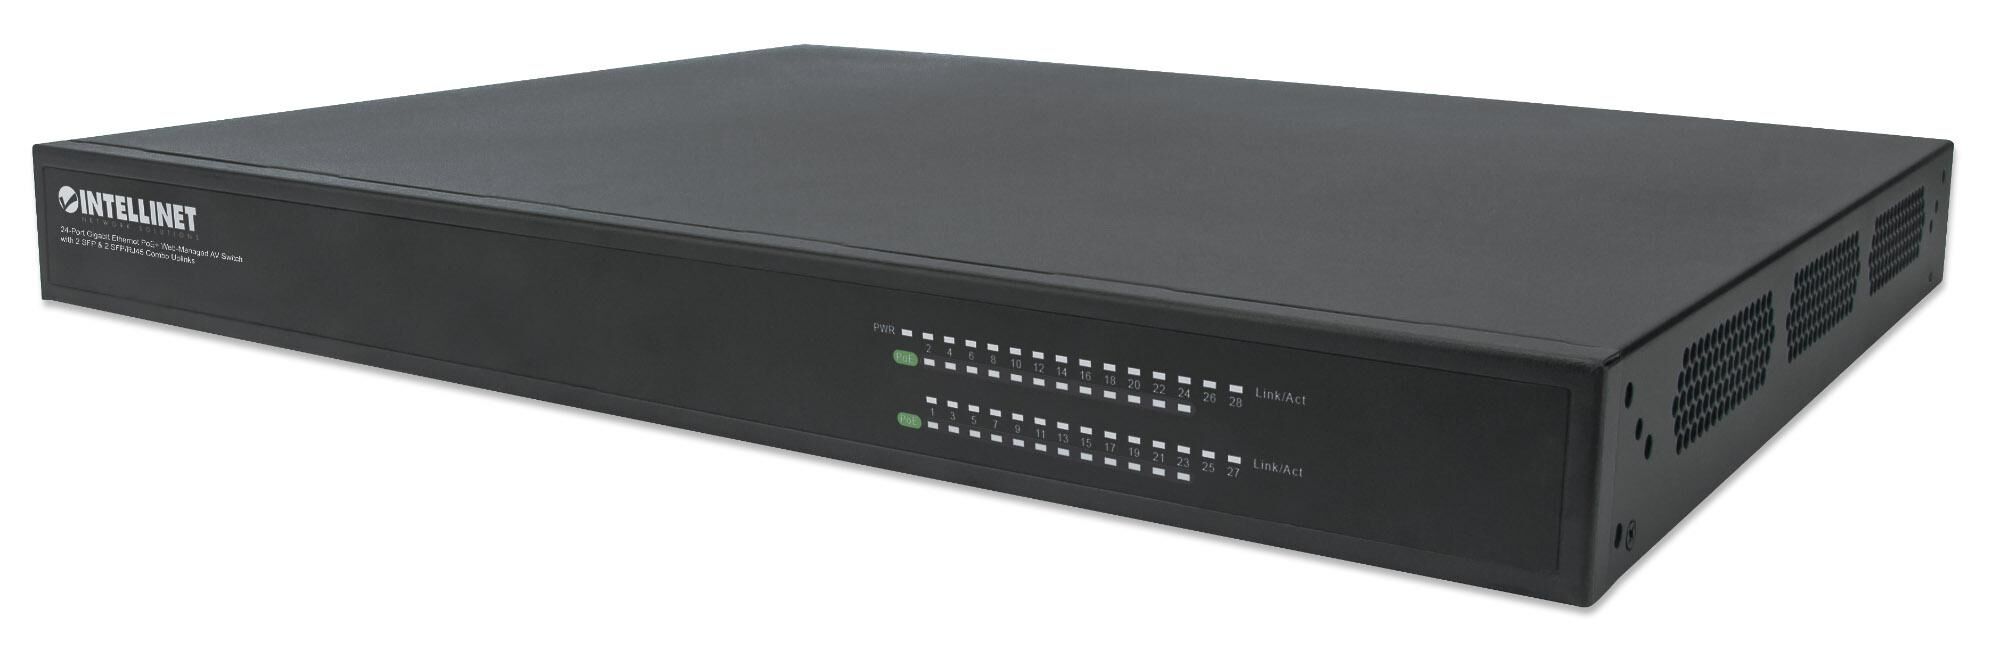 Intellinet Switch AV Gigabit Ethernet PoE+ a 24 porte 2 SFP e 2 SFP/RJ45